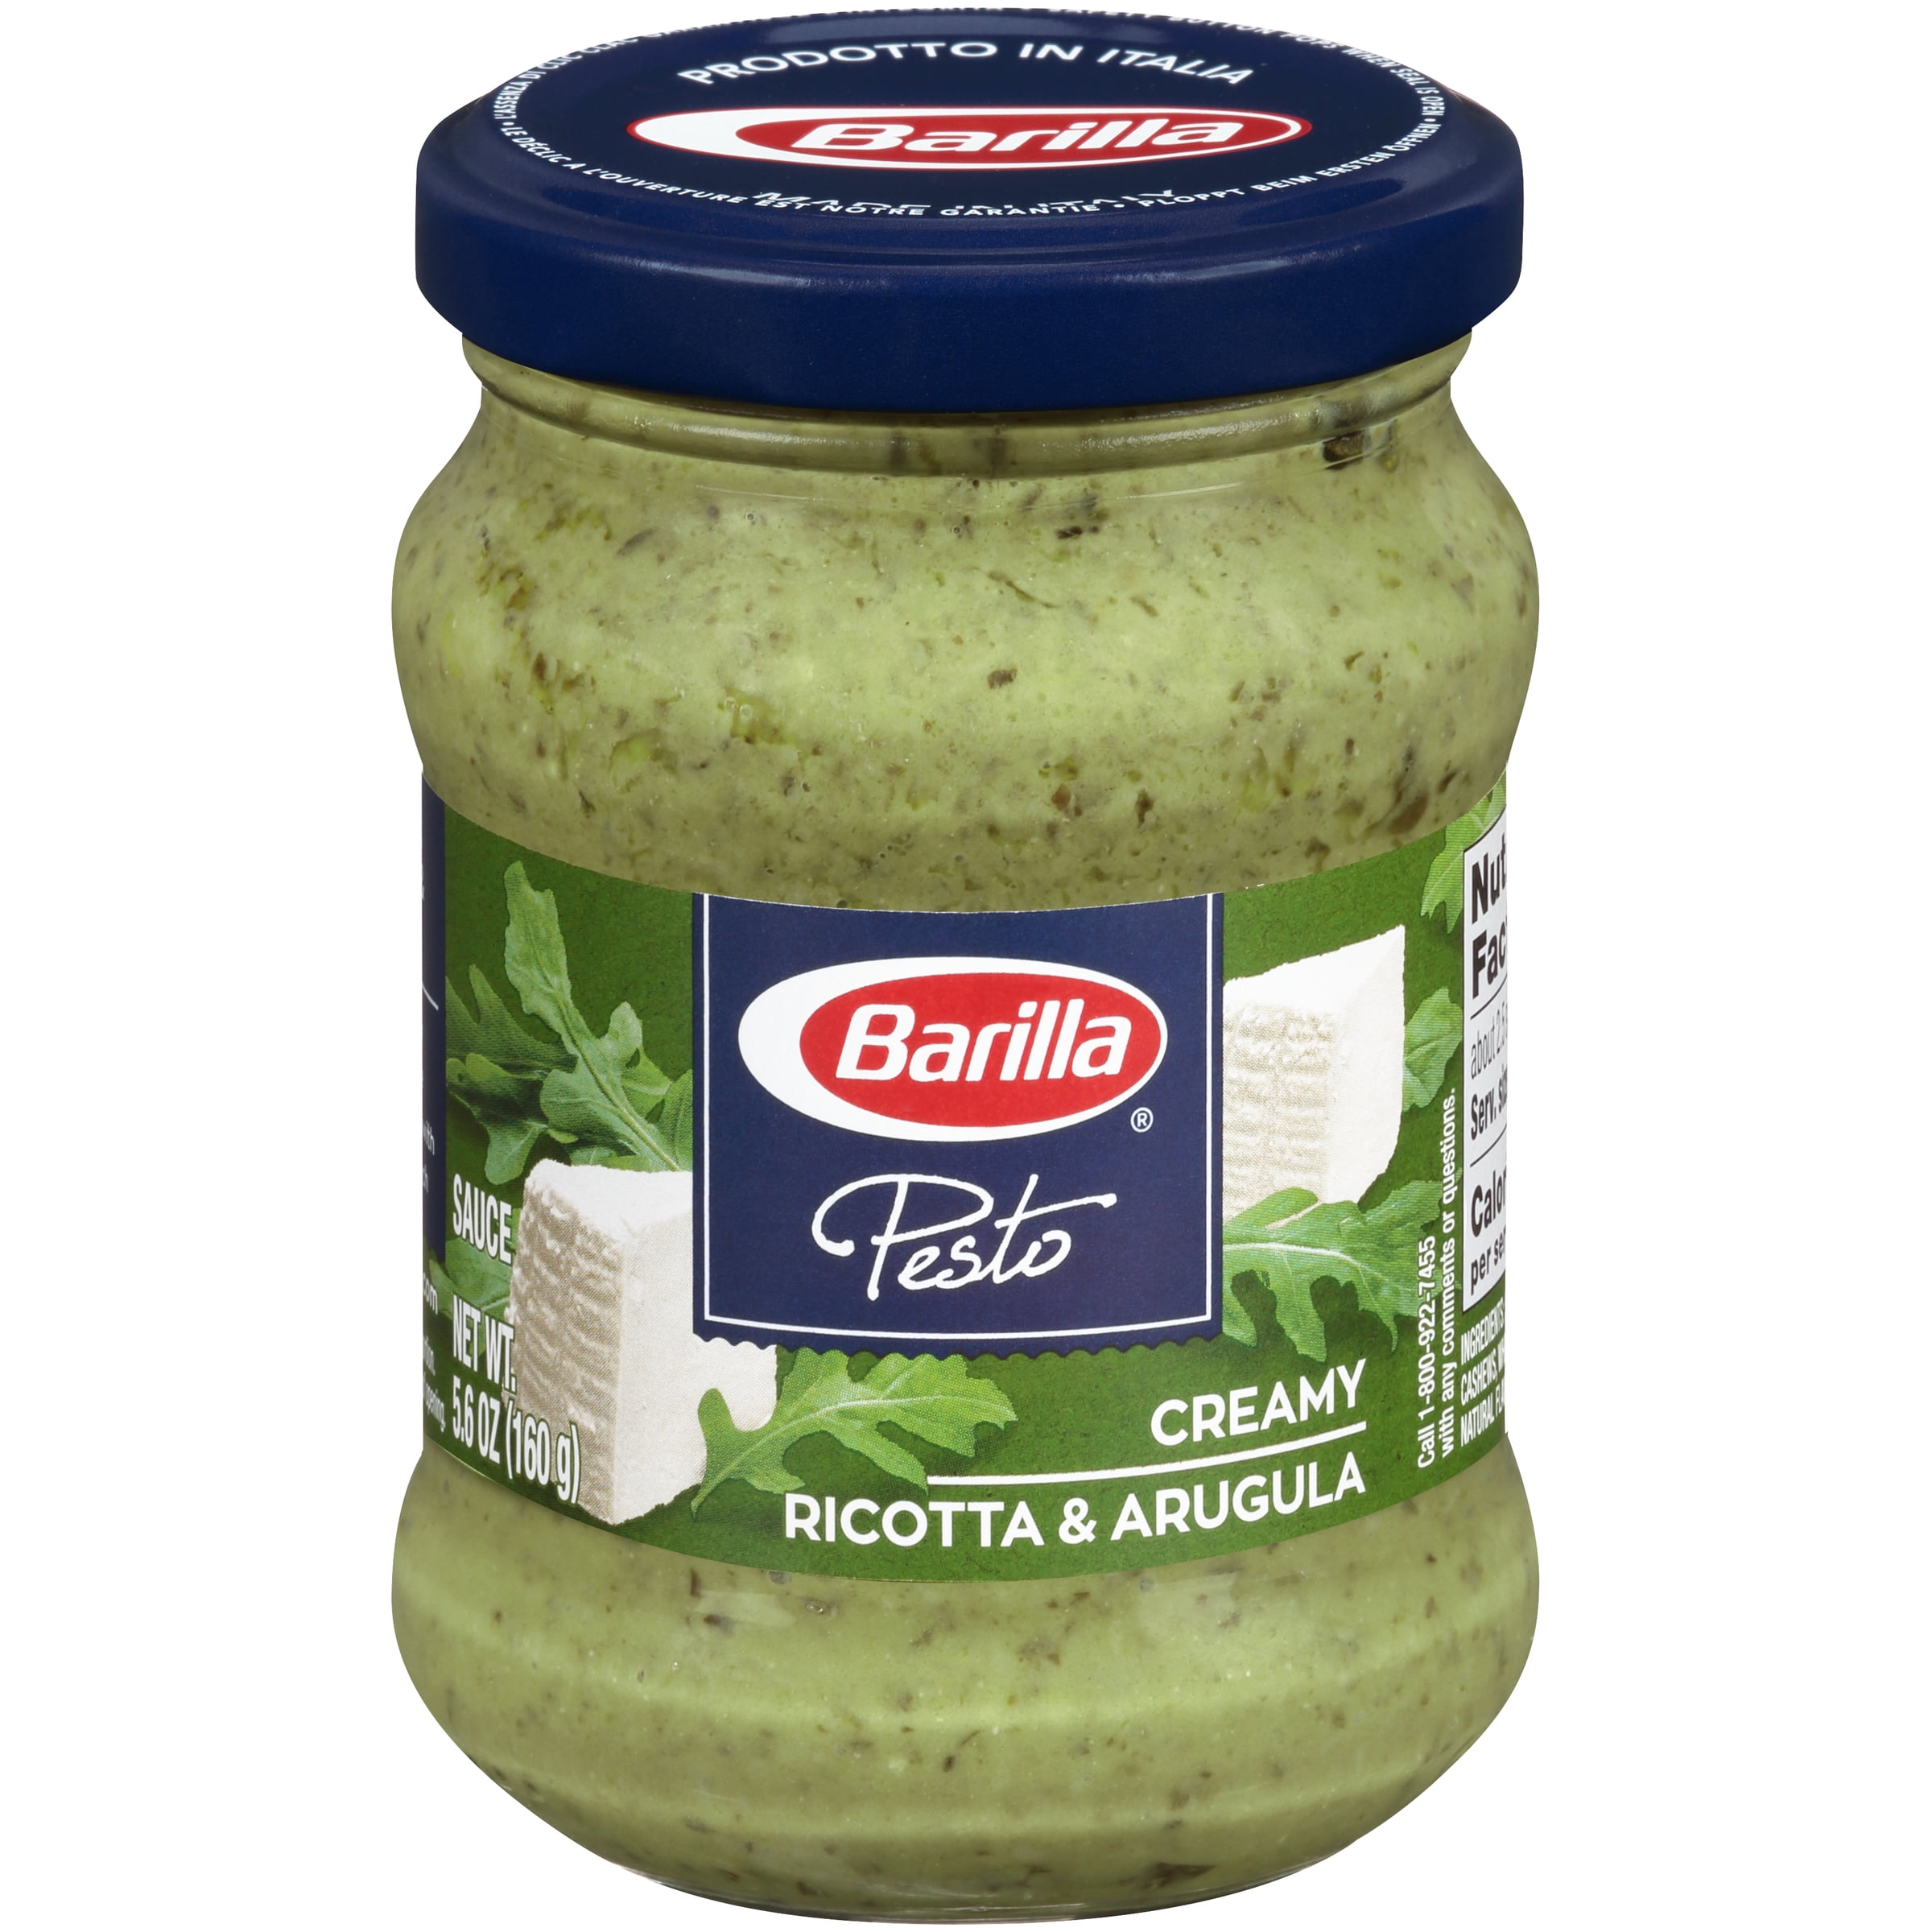 Barilla® Creamy Arugula & Basil and Spread oz Pesto Sauce 5.6